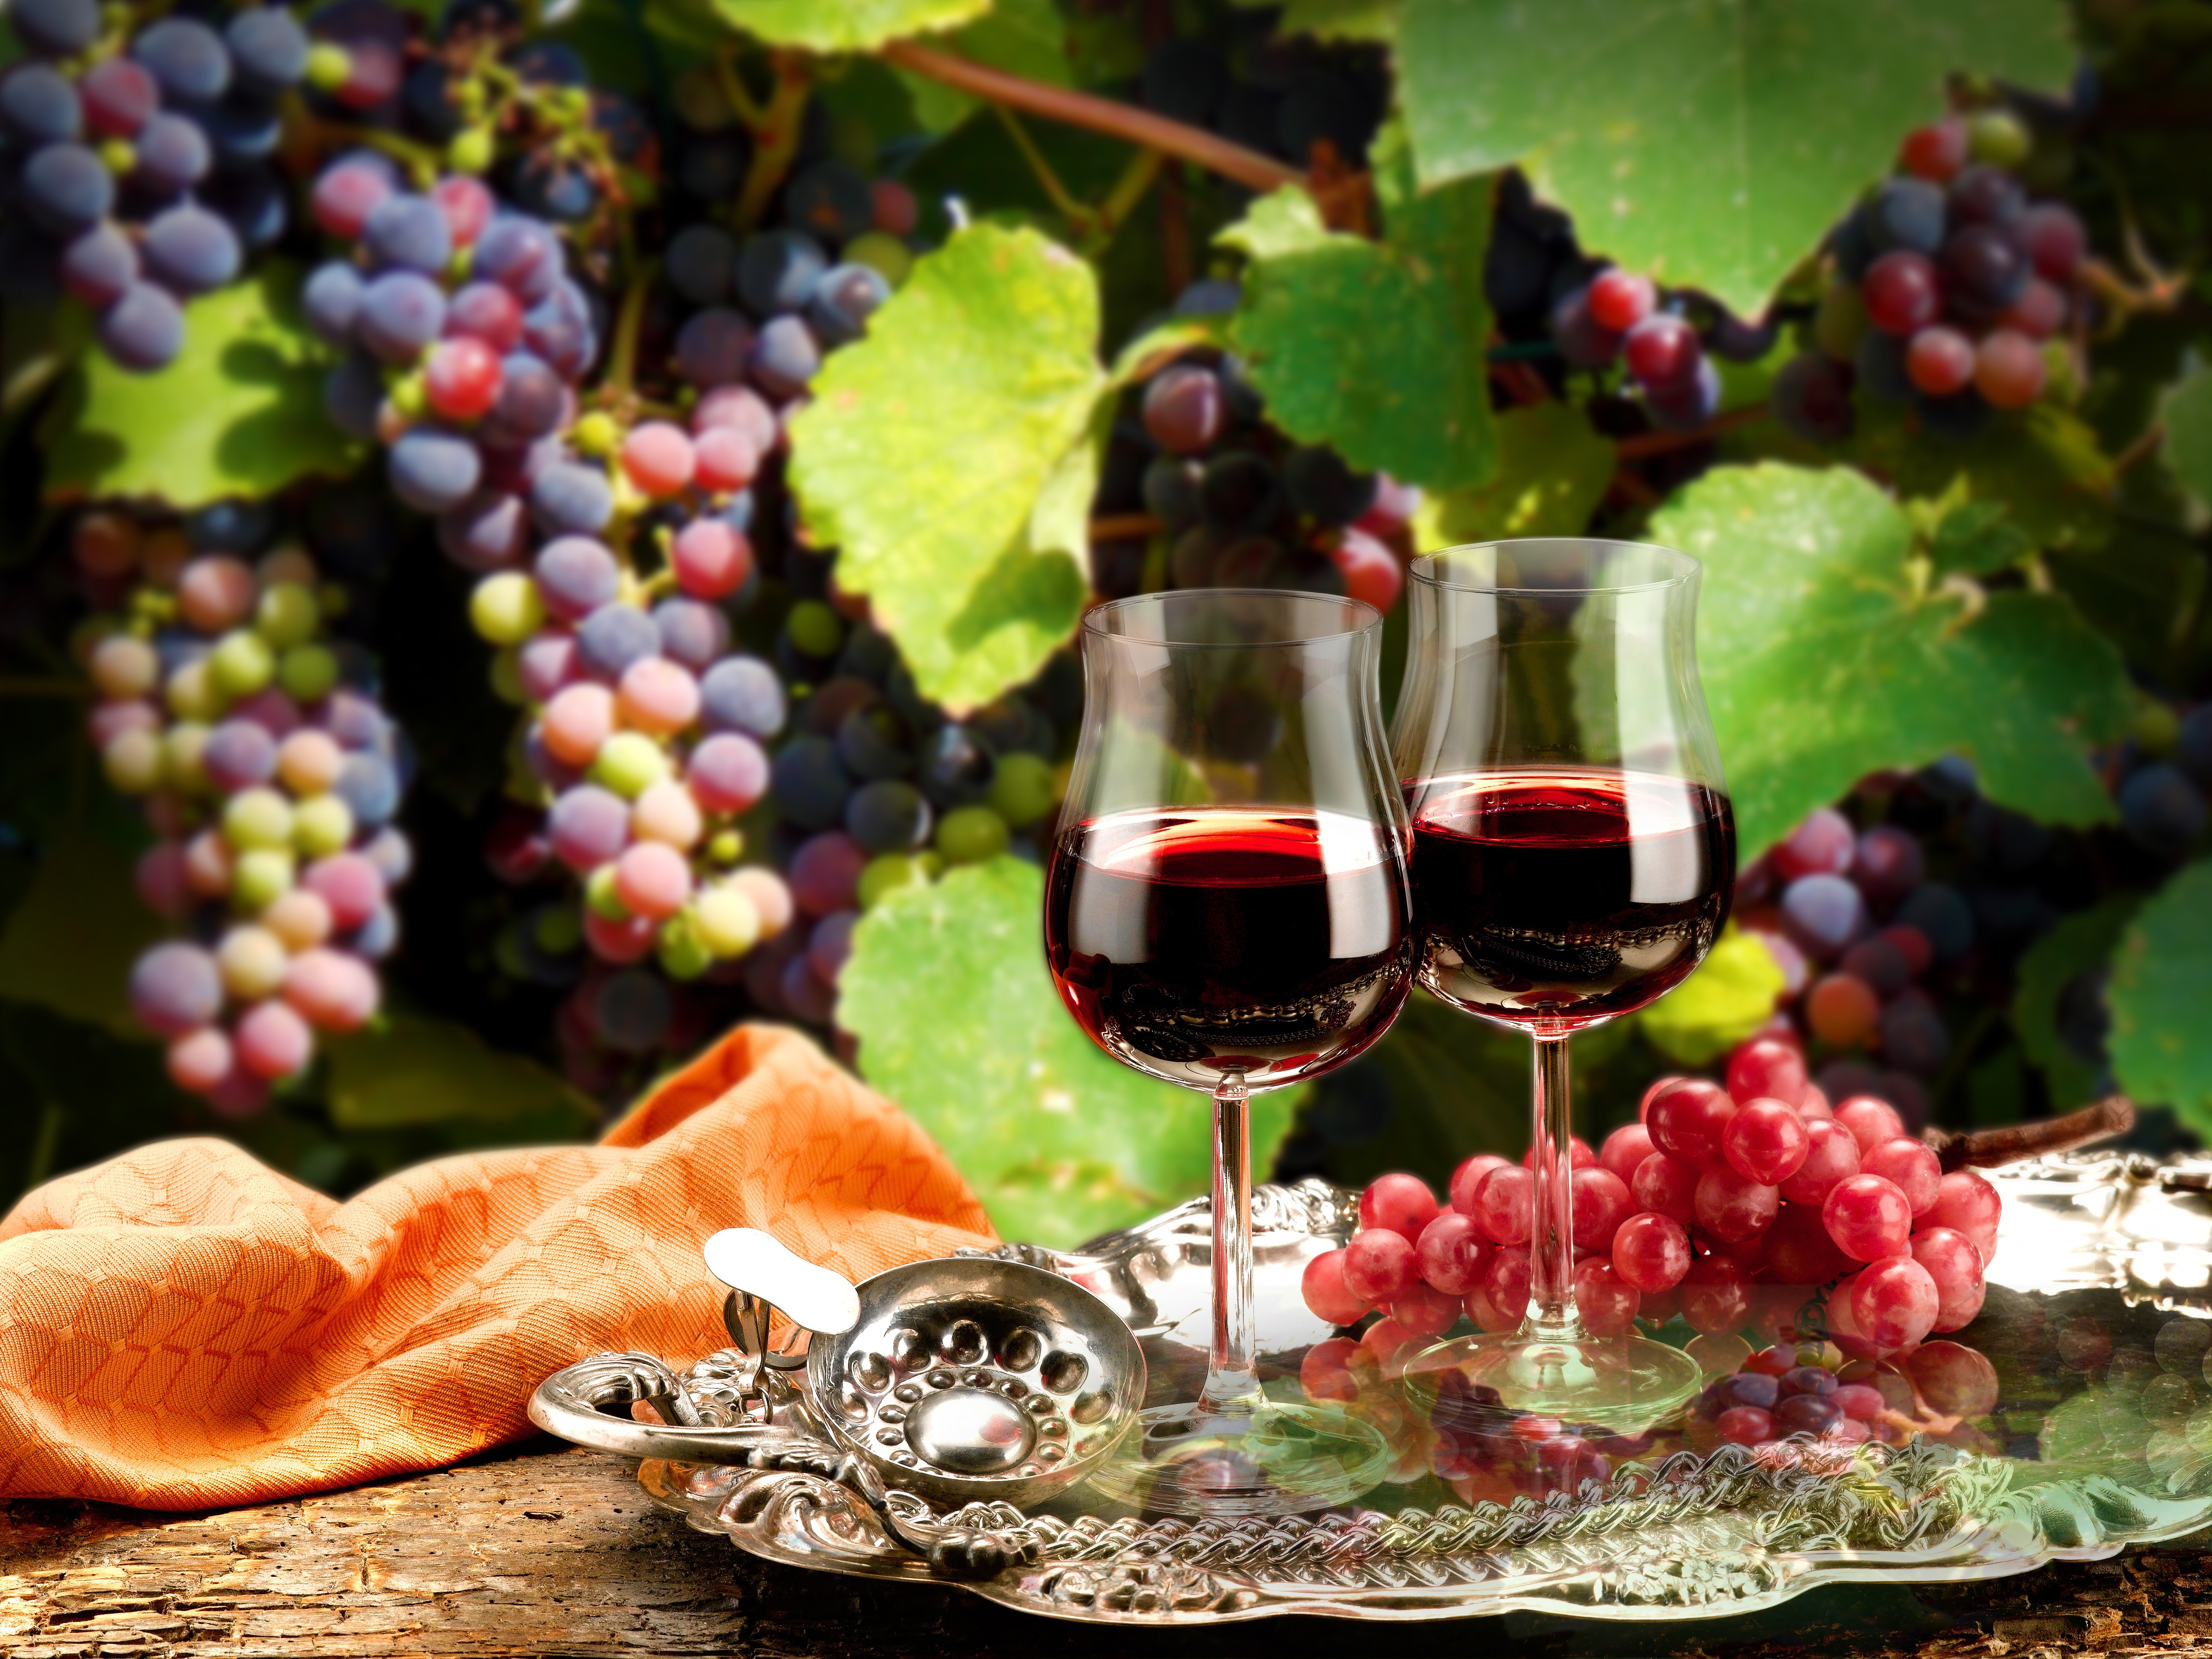 Картинку вине. Вино. Красное вино. Вино и виноград. Виноградное вино.